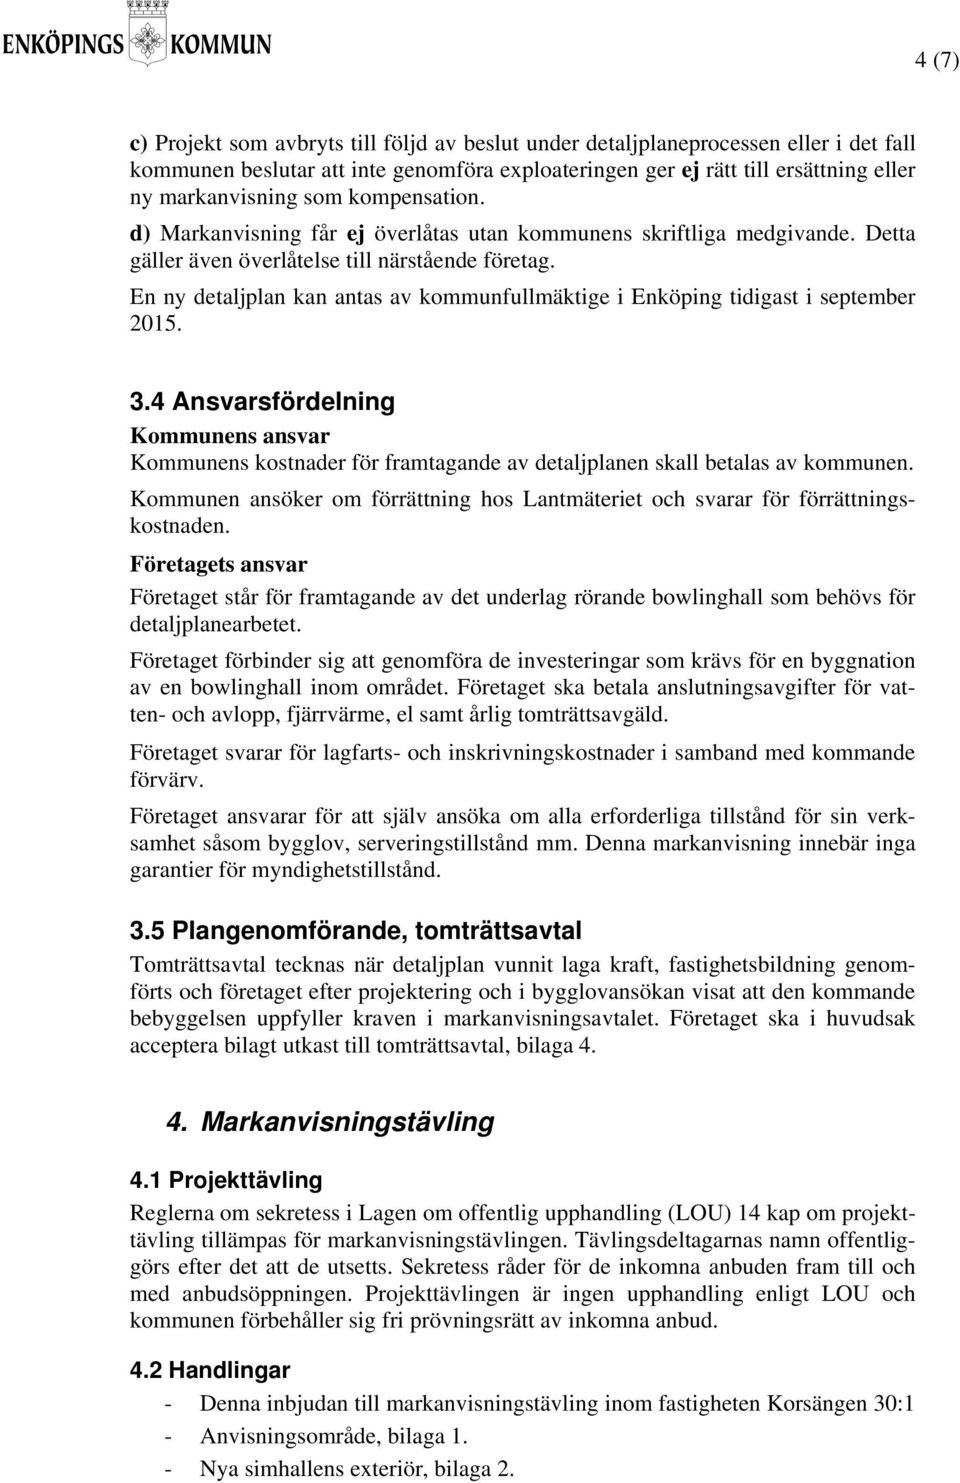 En ny detaljplan kan antas av kommunfullmäktige i Enköping tidigast i september 2015. 3.